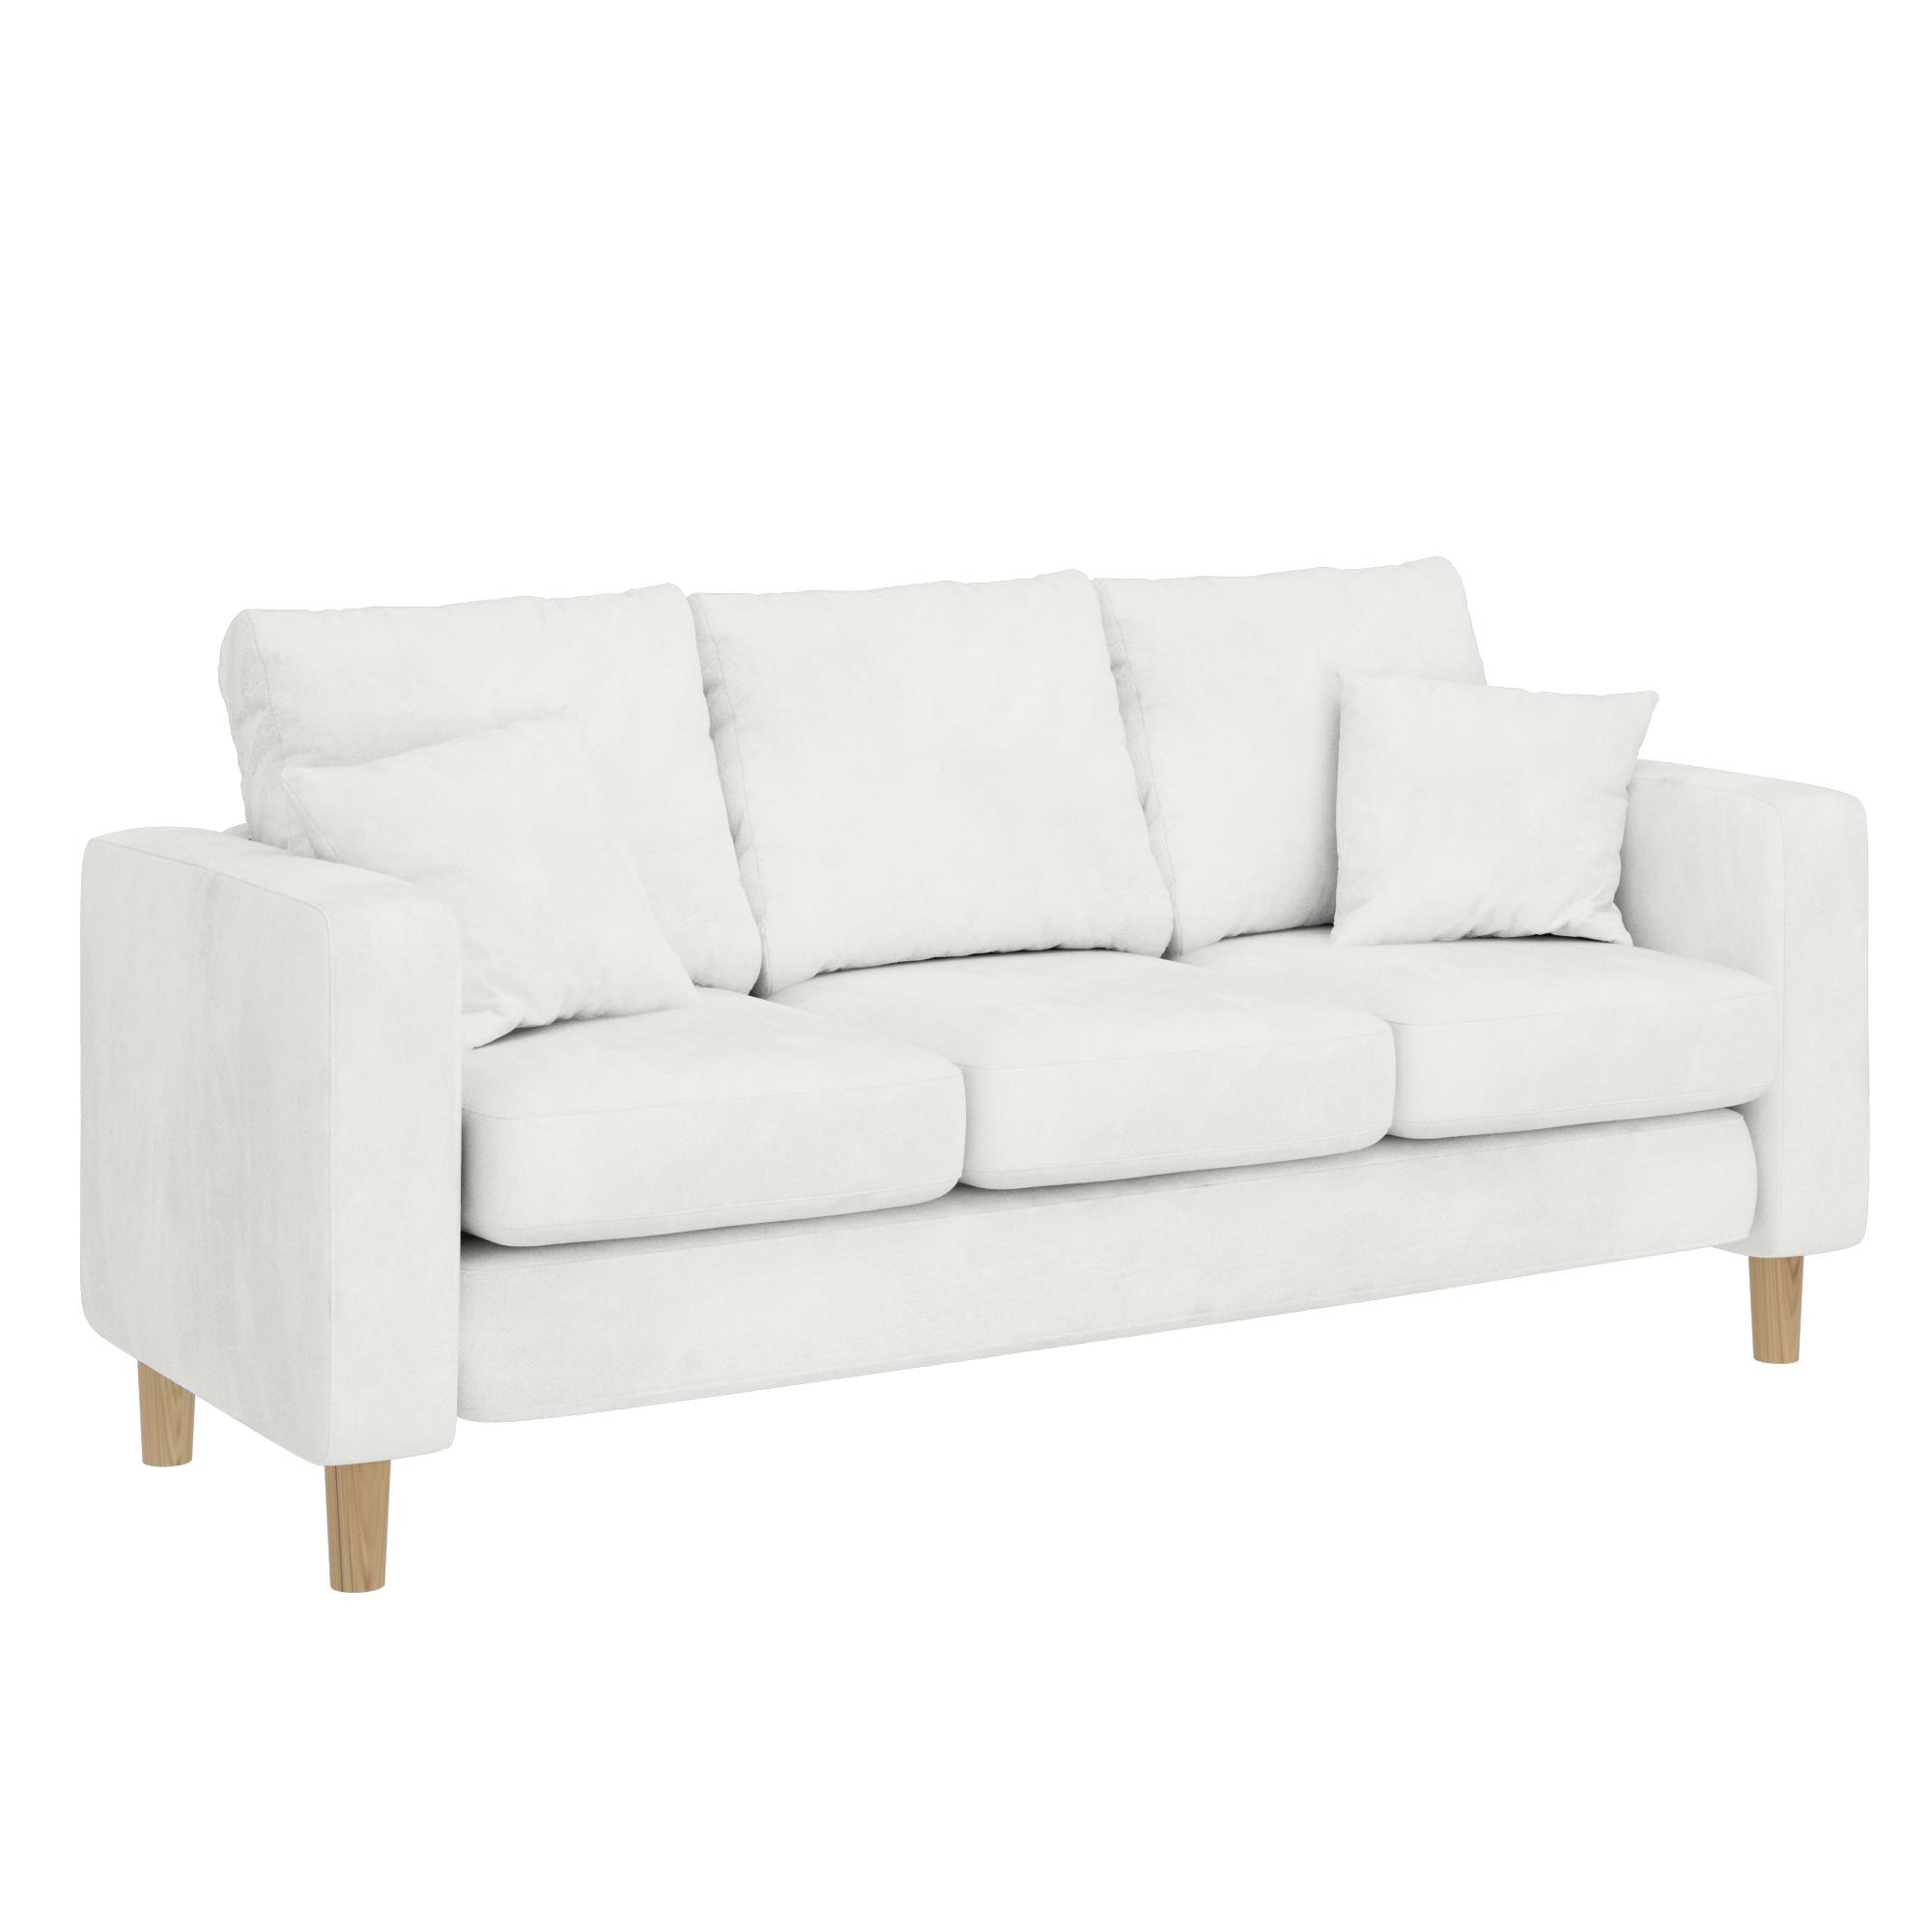 ספה תלת מושבית דגם ליסבון צבע לבן שנהב